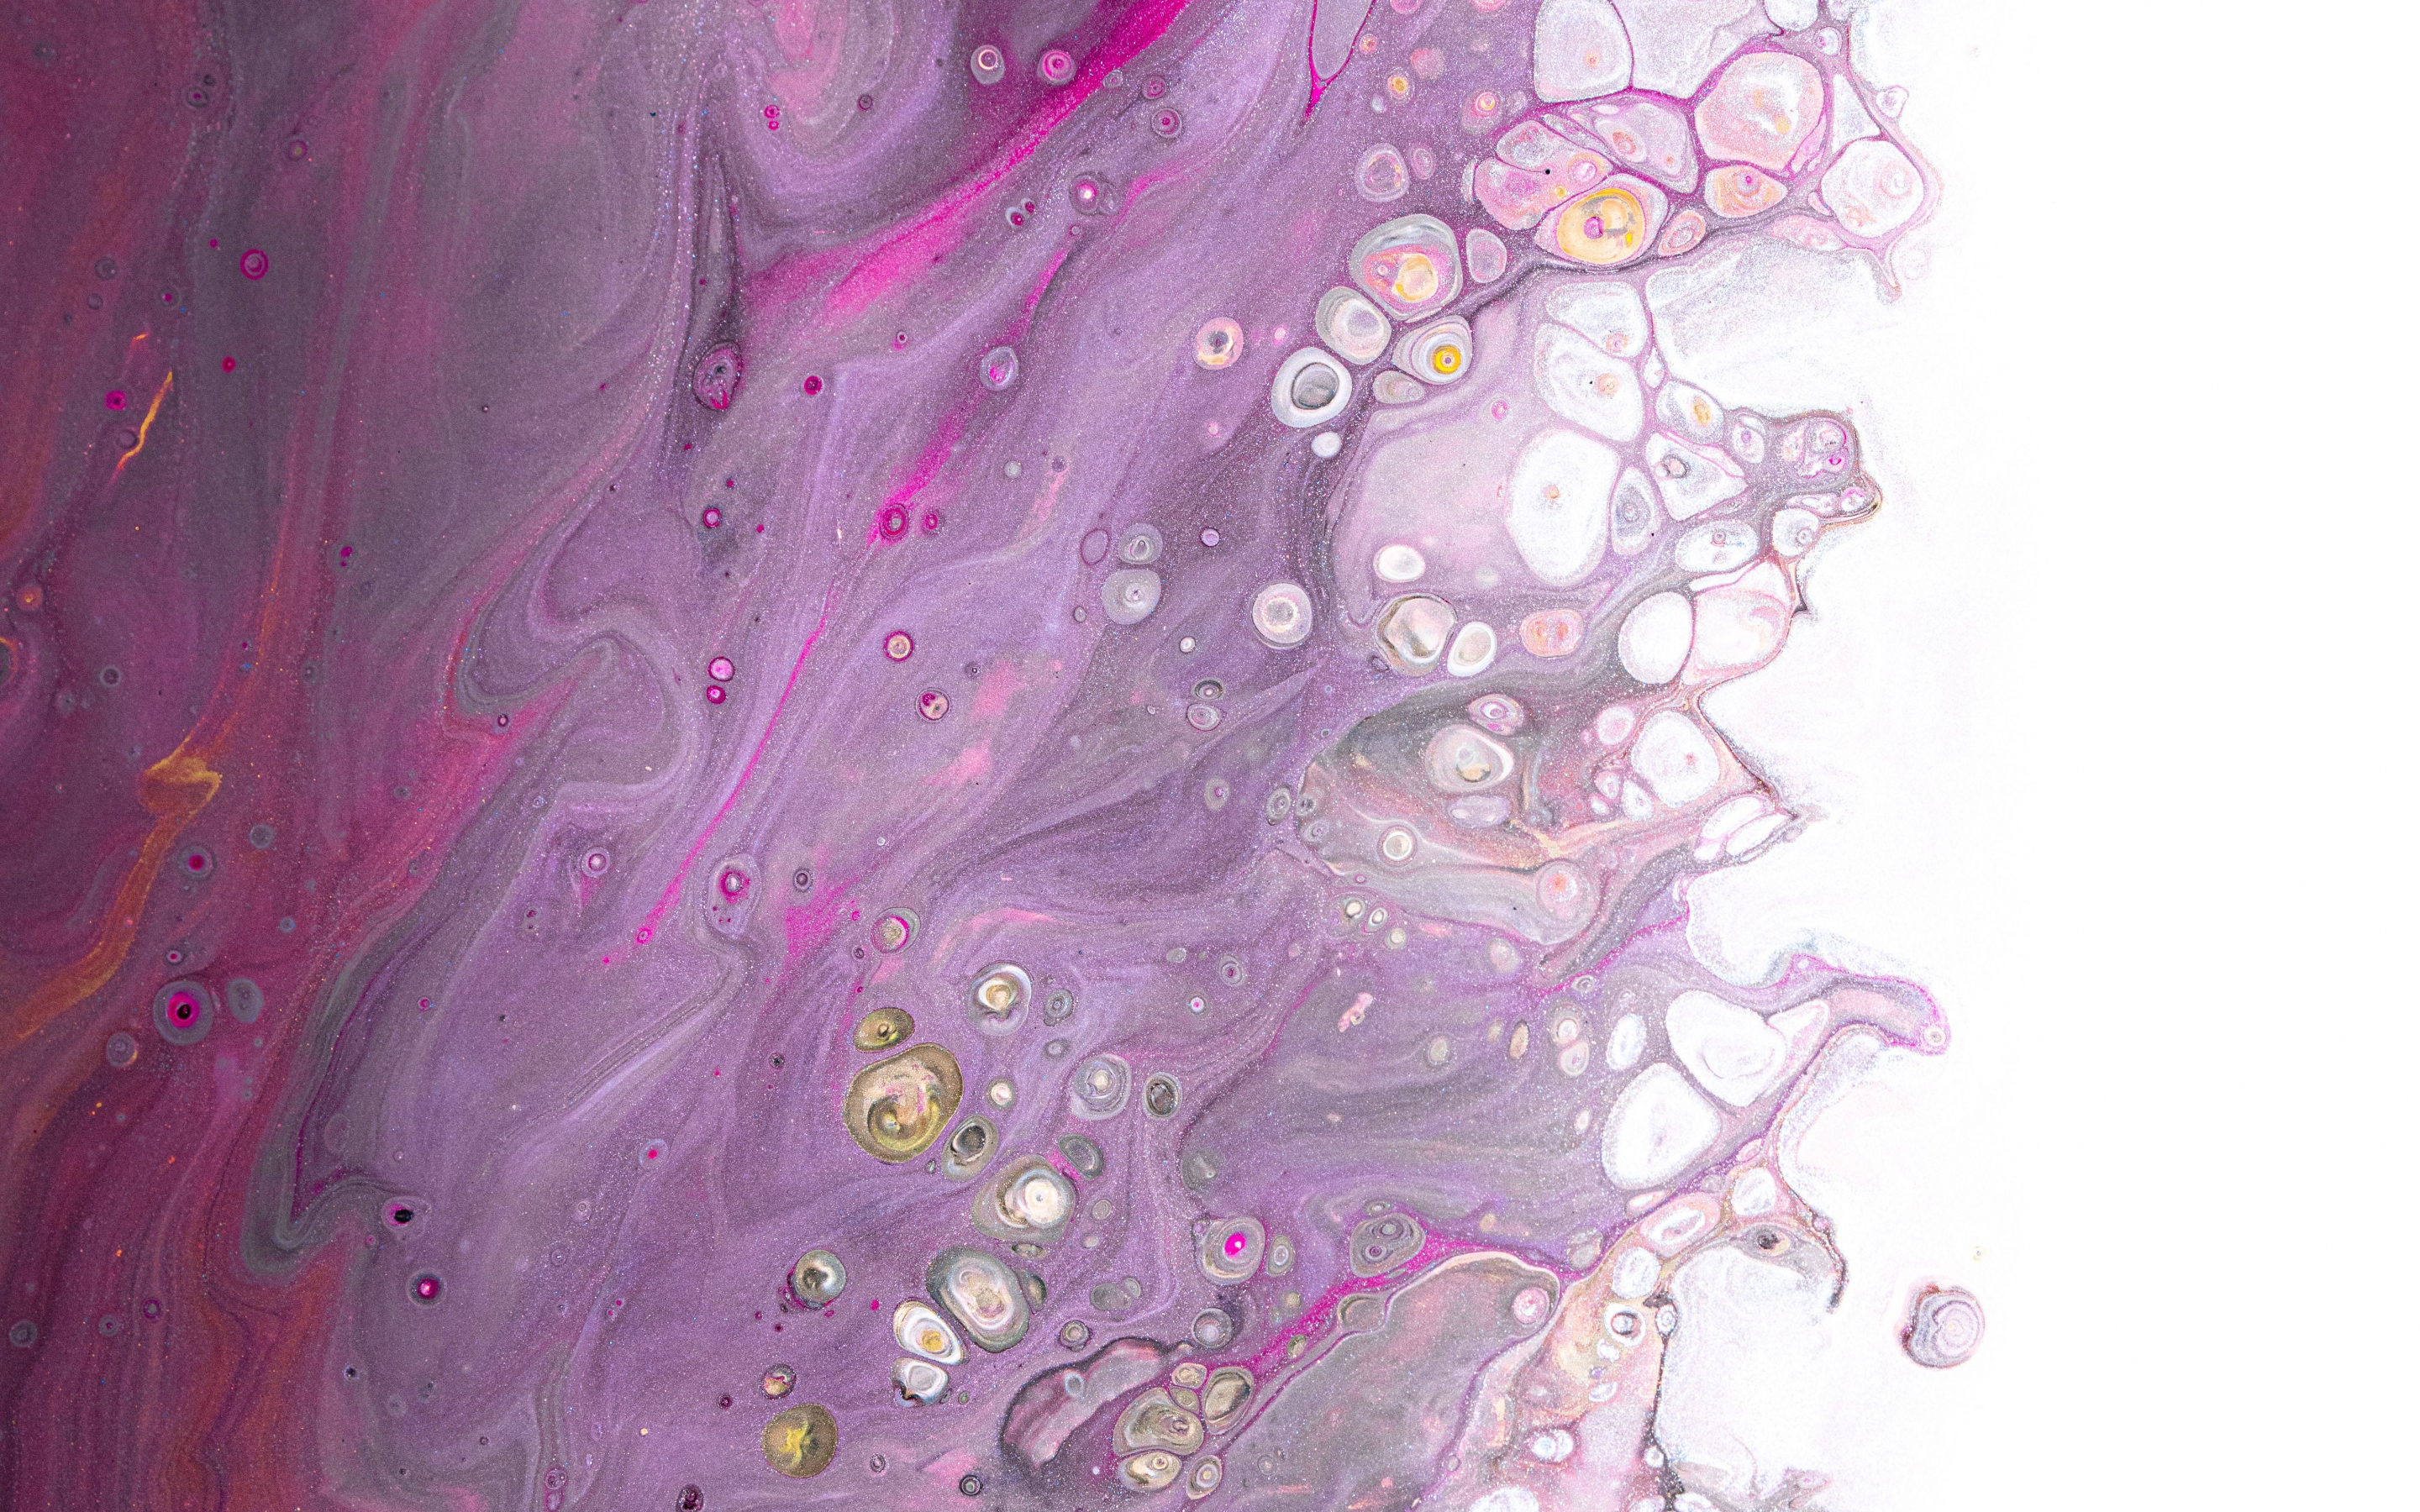 Small spots, pattern, pinkish art, 2880x1800 wallpaper